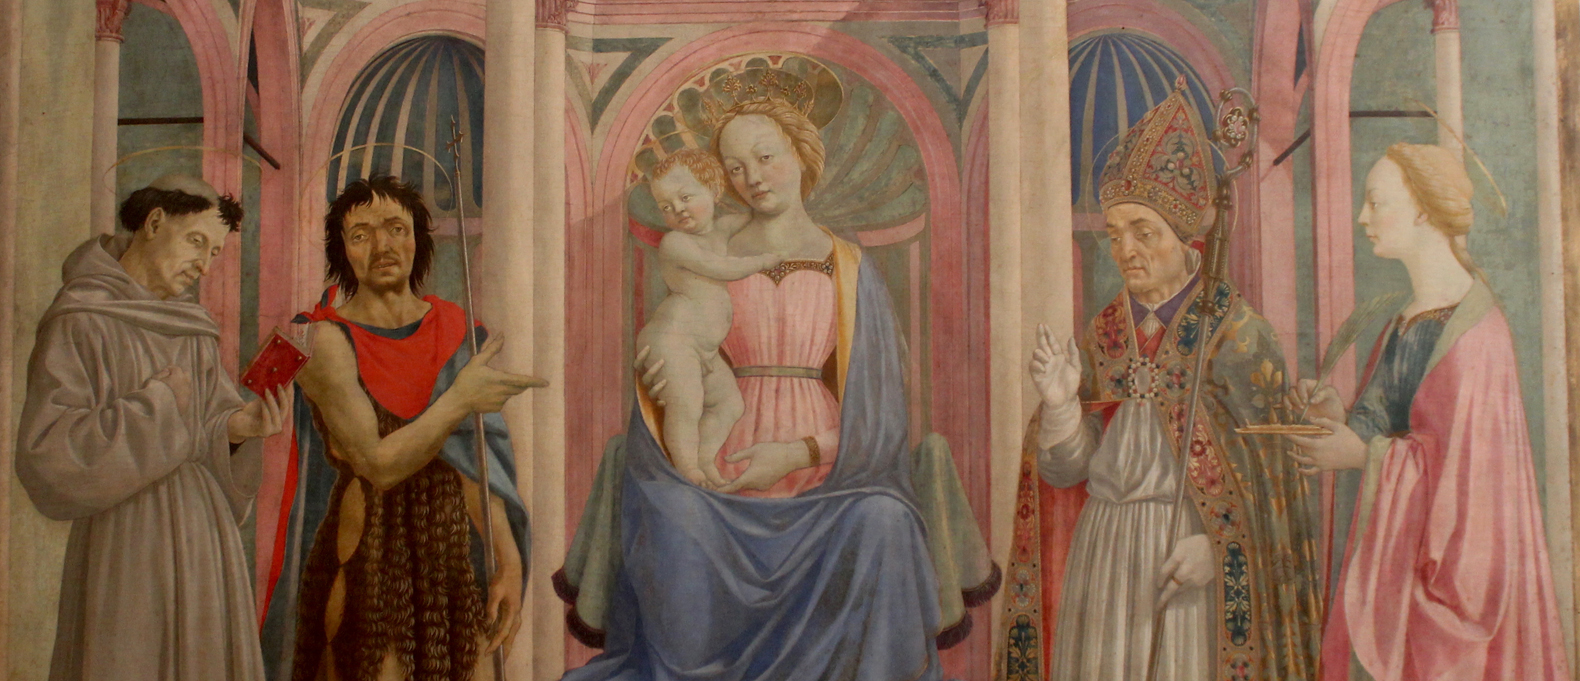 Domenico Veneziano, Thronende Maria mit Kind und den Heiligen Franziskus, Johannes der Täufer, Zenobius und Lucia, 1445-48, Florenz, Galleria degli Uffizi.